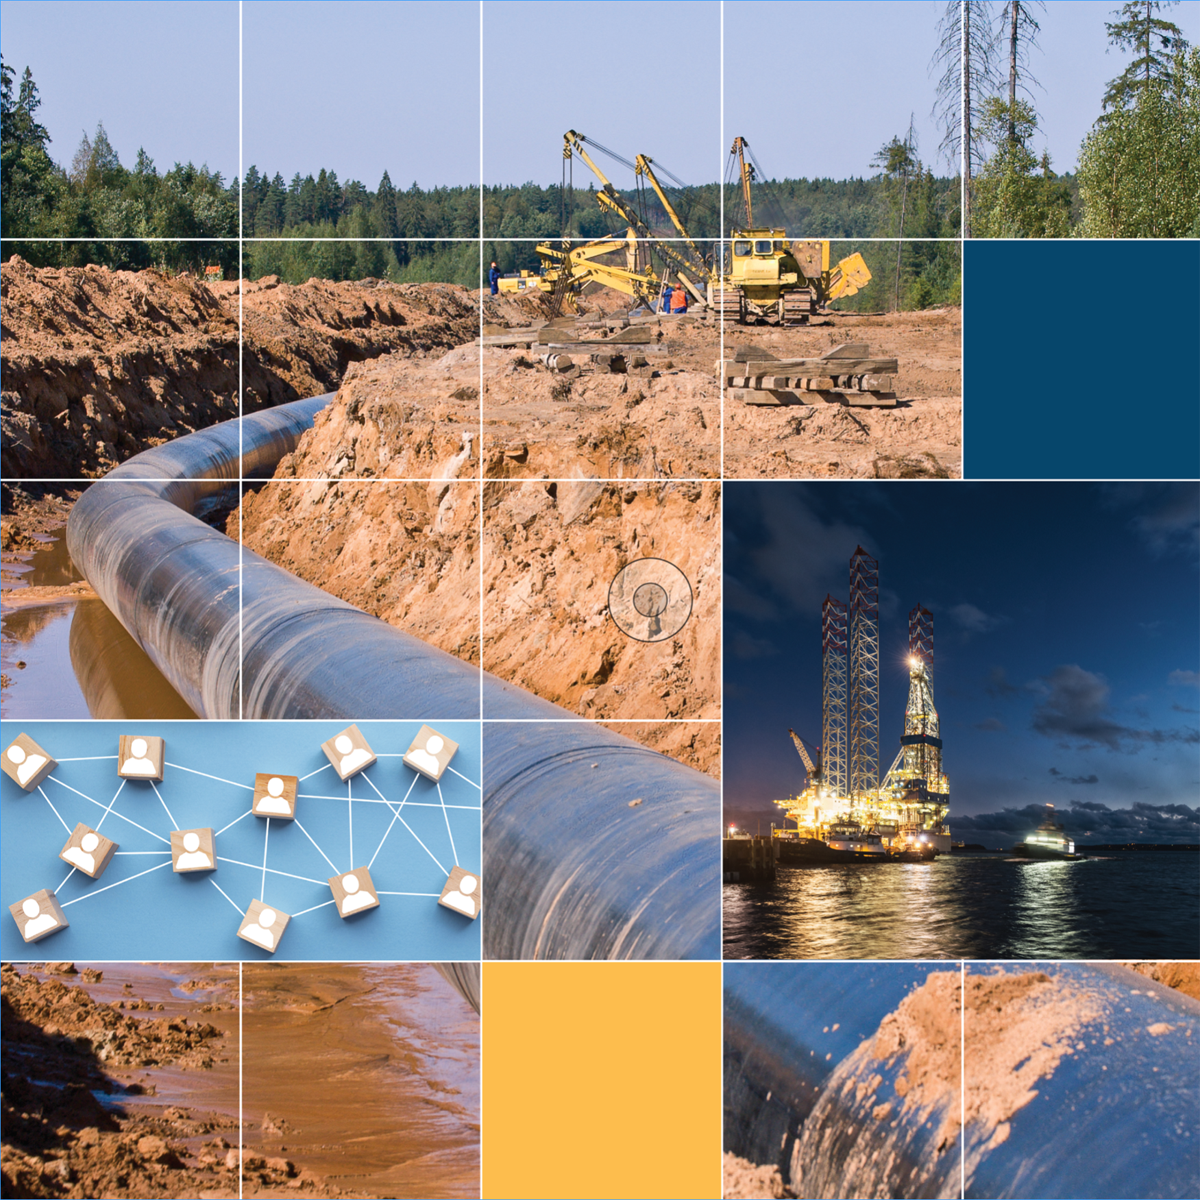 Un pipeline est posé dans une tranchée pendant la construction et une installation pétrolière et gazière extracôtière est illustrée